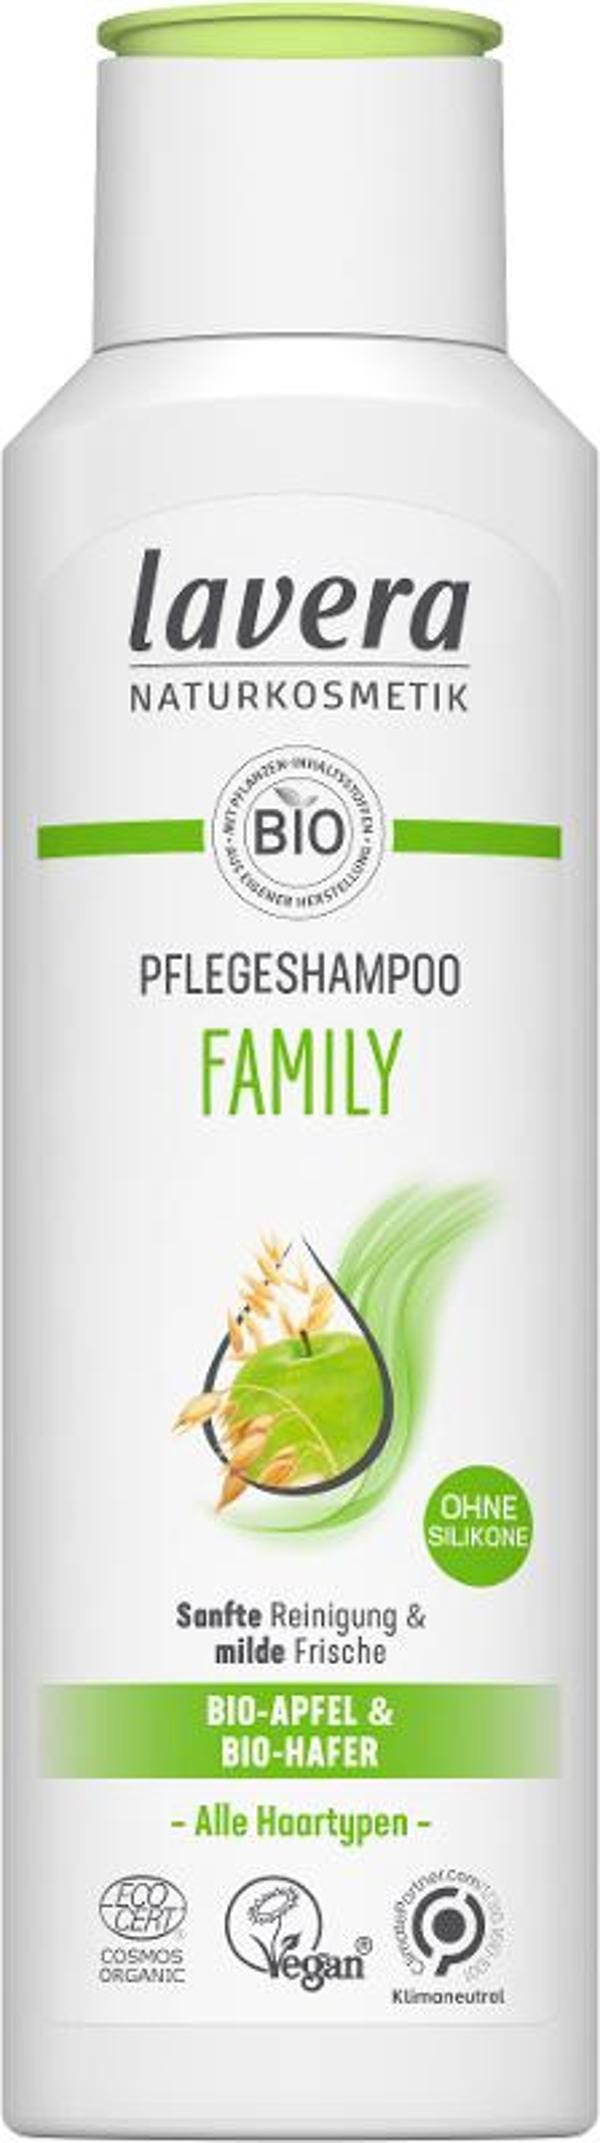 Produktfoto zu Pflegeshampoo Family